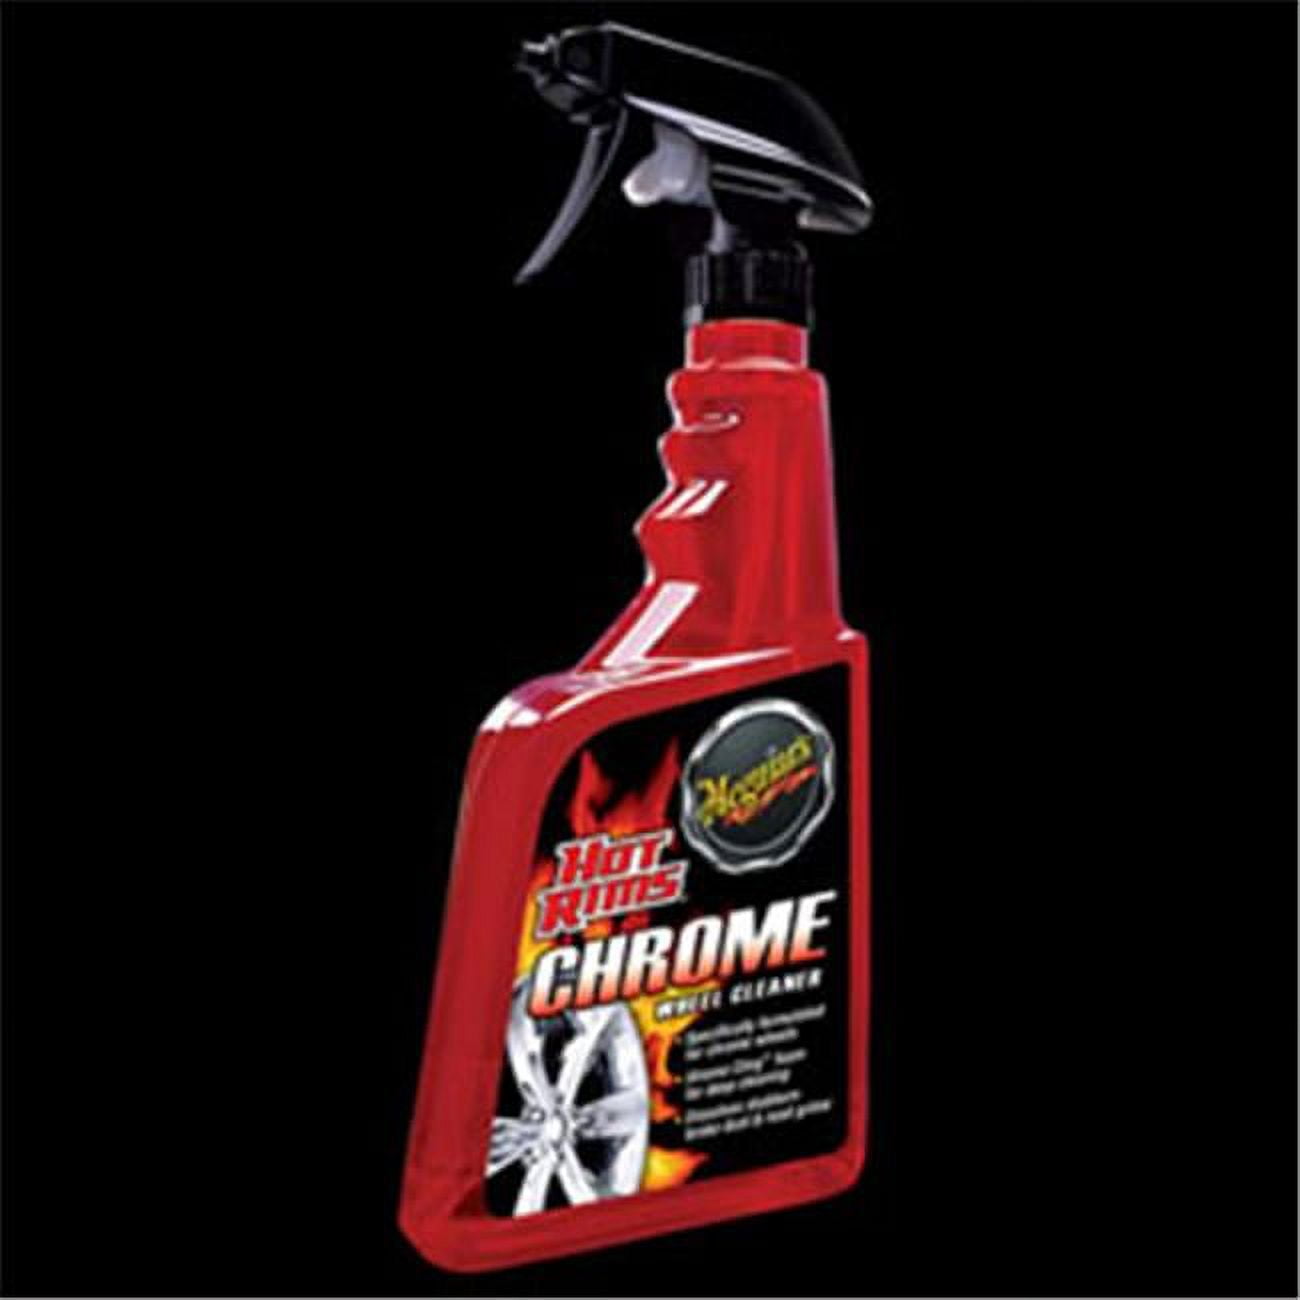 Meguiar's G19124 Hot Rims Chrome Wheel Cleaner - 24 Oz Spray Bottle